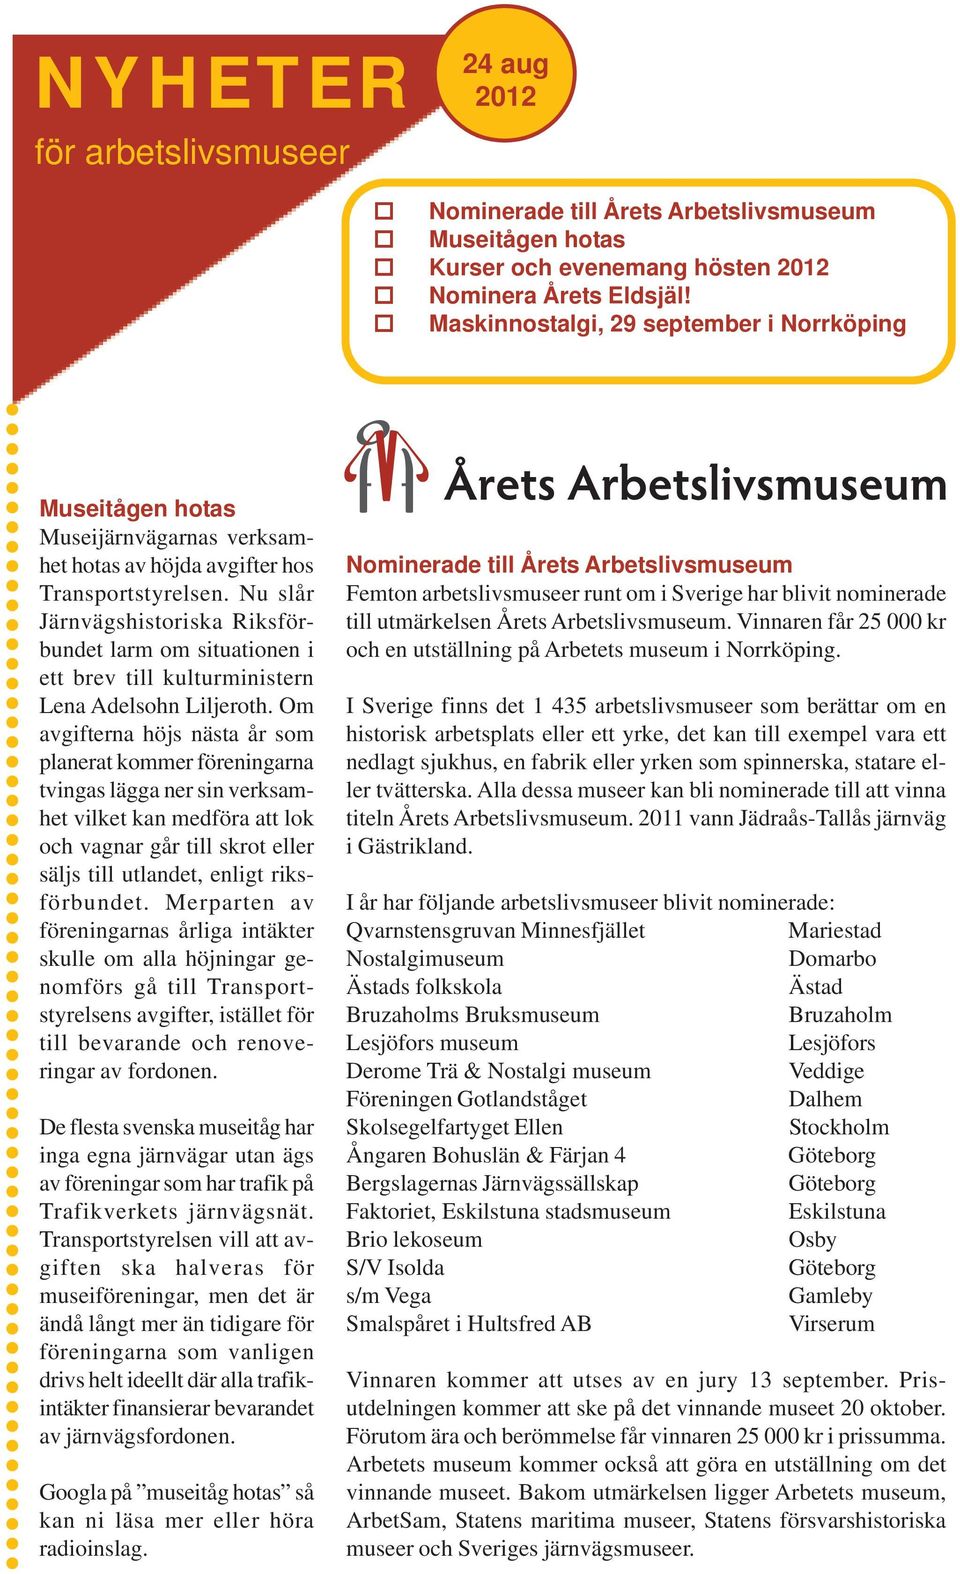 Nu slår Järnvägshistoriska Riksförbundet larm om situationen i ett brev till kulturministern Lena Adelsohn Liljeroth.